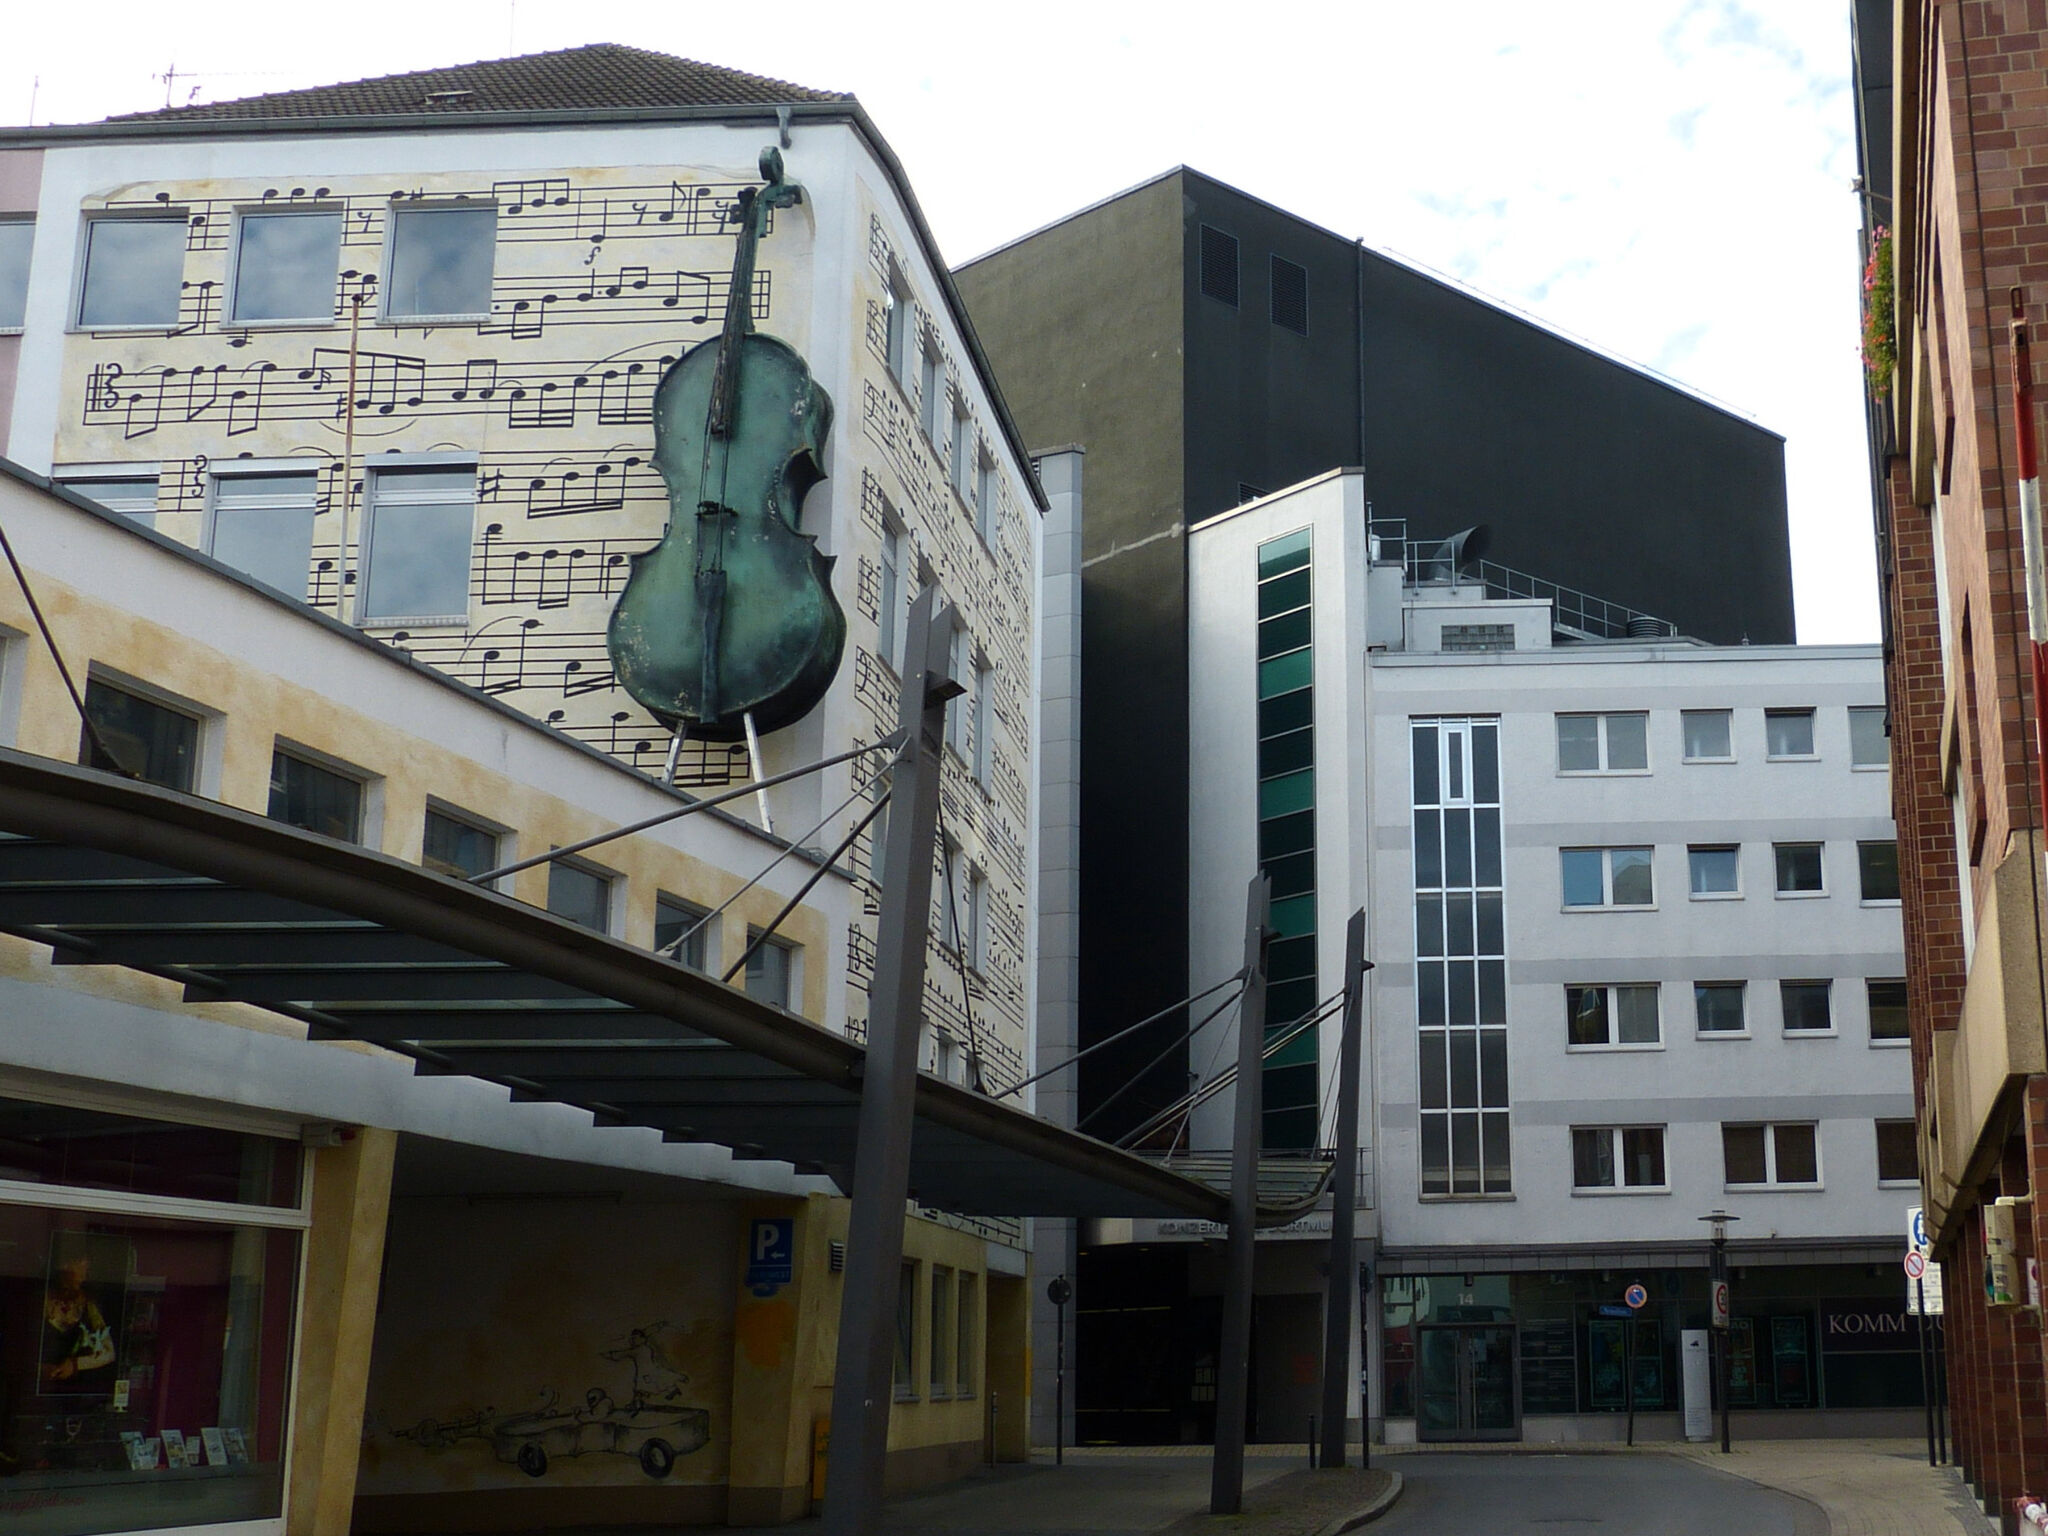 artist unknown&mdash;Concert Hall Dortmund